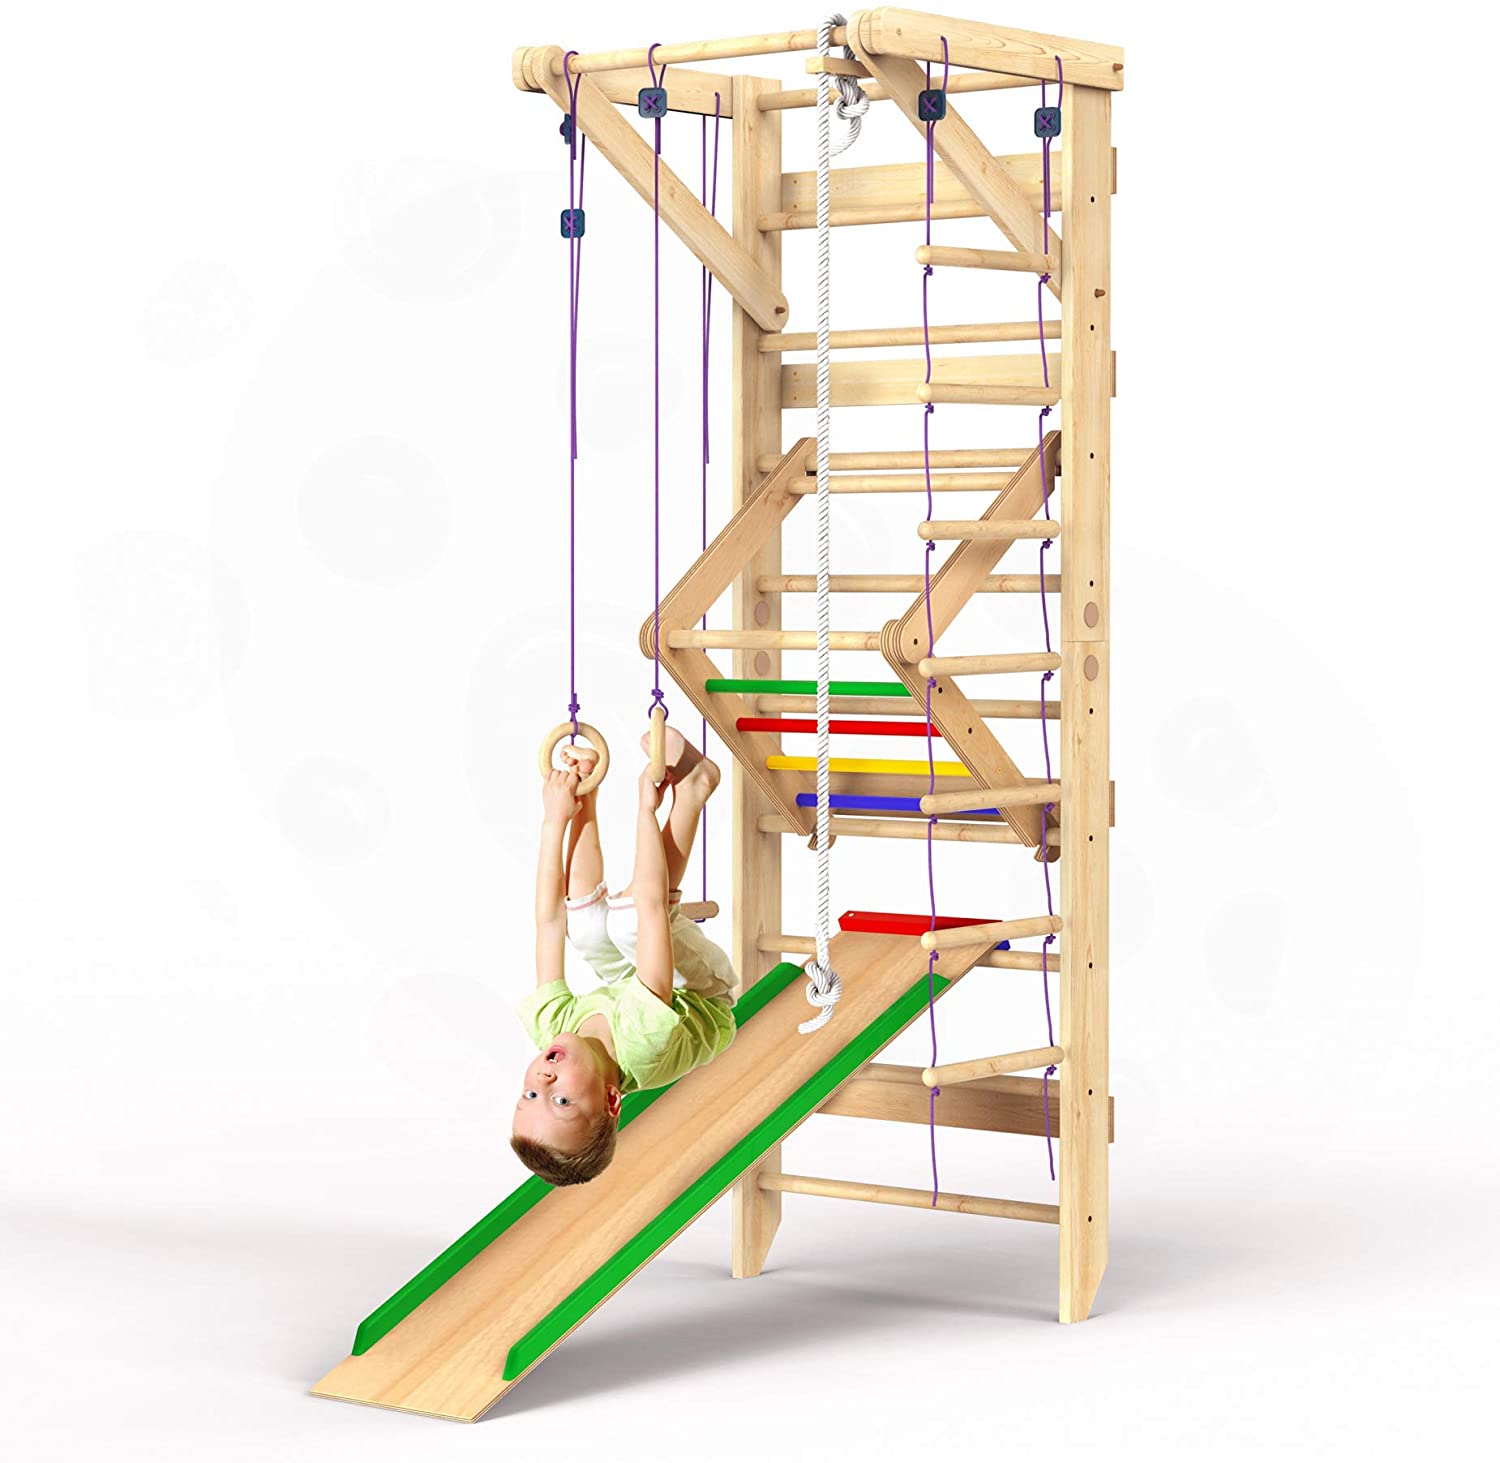 Wedanta Swedish Ladder Wall Gym